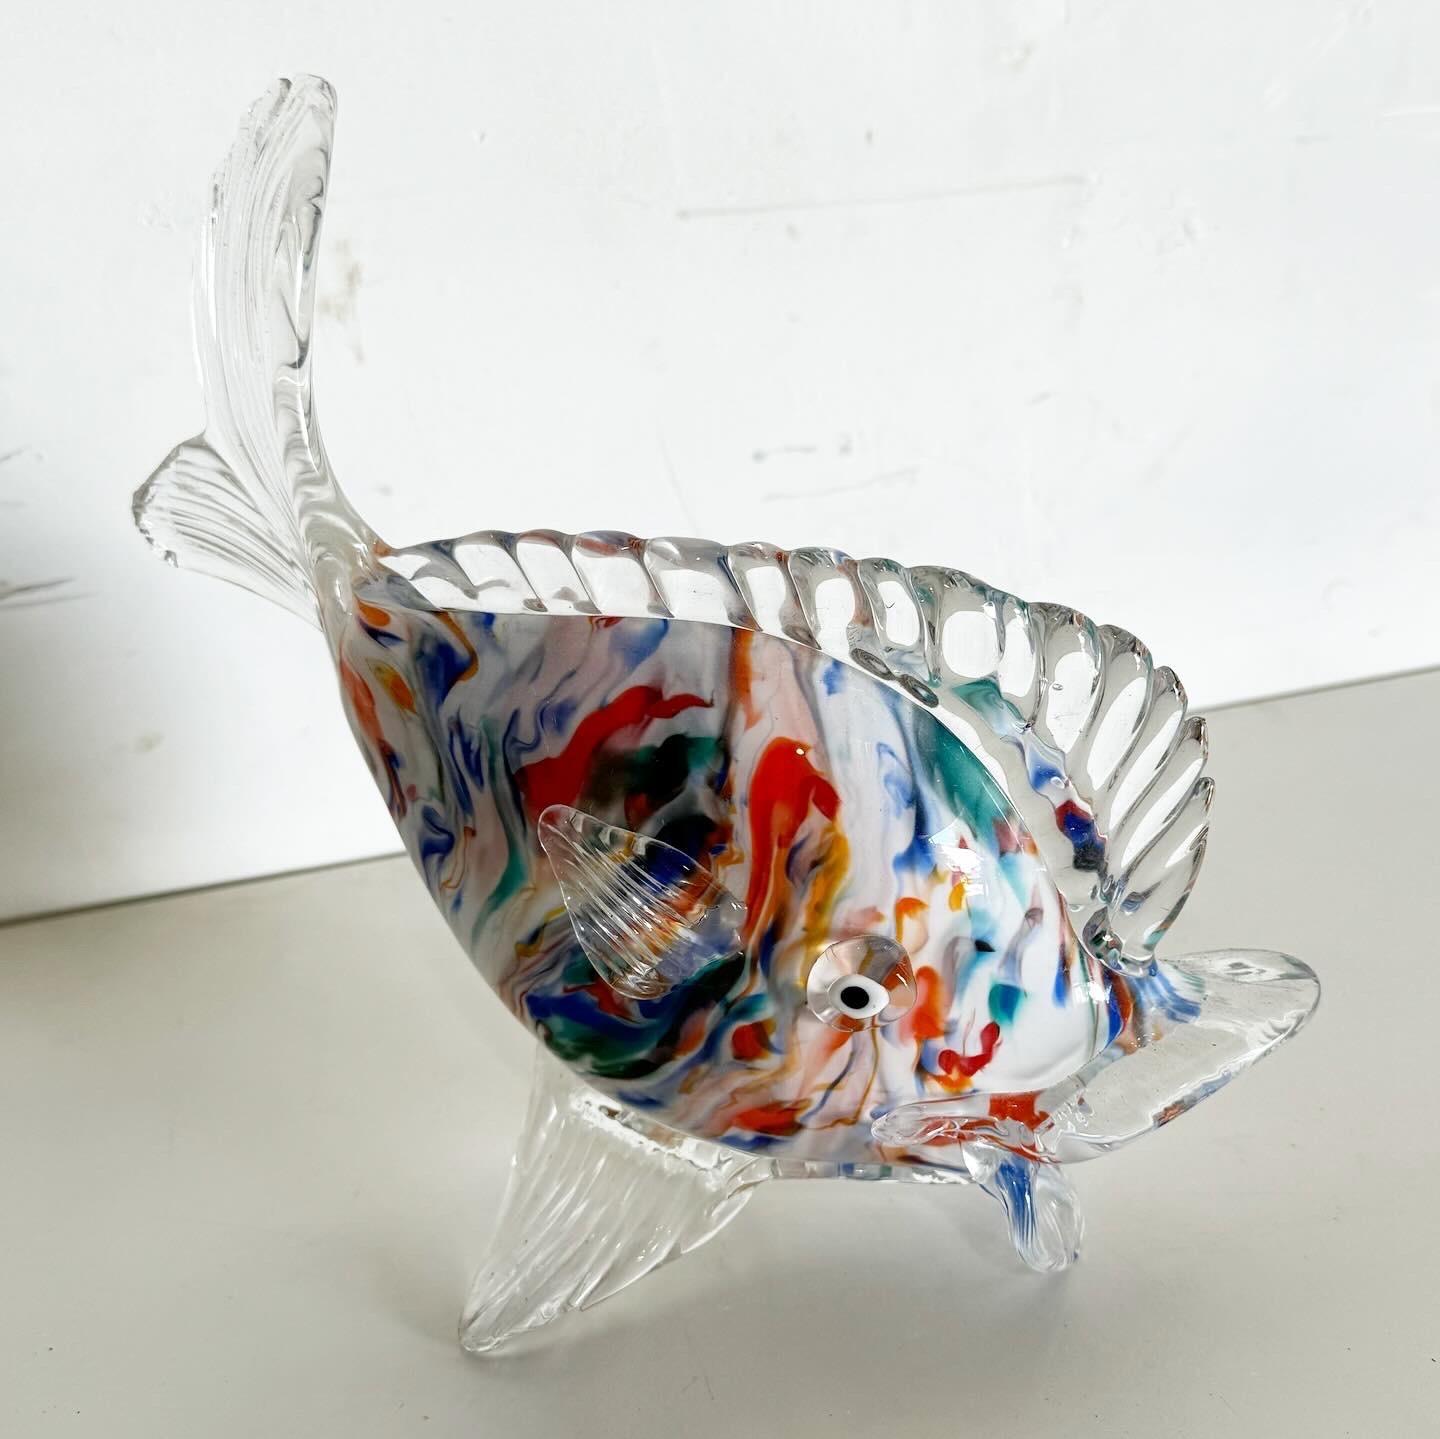 Tauchen Sie ein in die Kunstfertigkeit einer mundgeblasenen Glasfischskulptur im Vintage-Stil, ein Zeugnis handwerklichen Könnens. Dieses Werk fängt die lebendige Essenz des aquatischen Lebens ein und ist eine faszinierende Ergänzung für jede